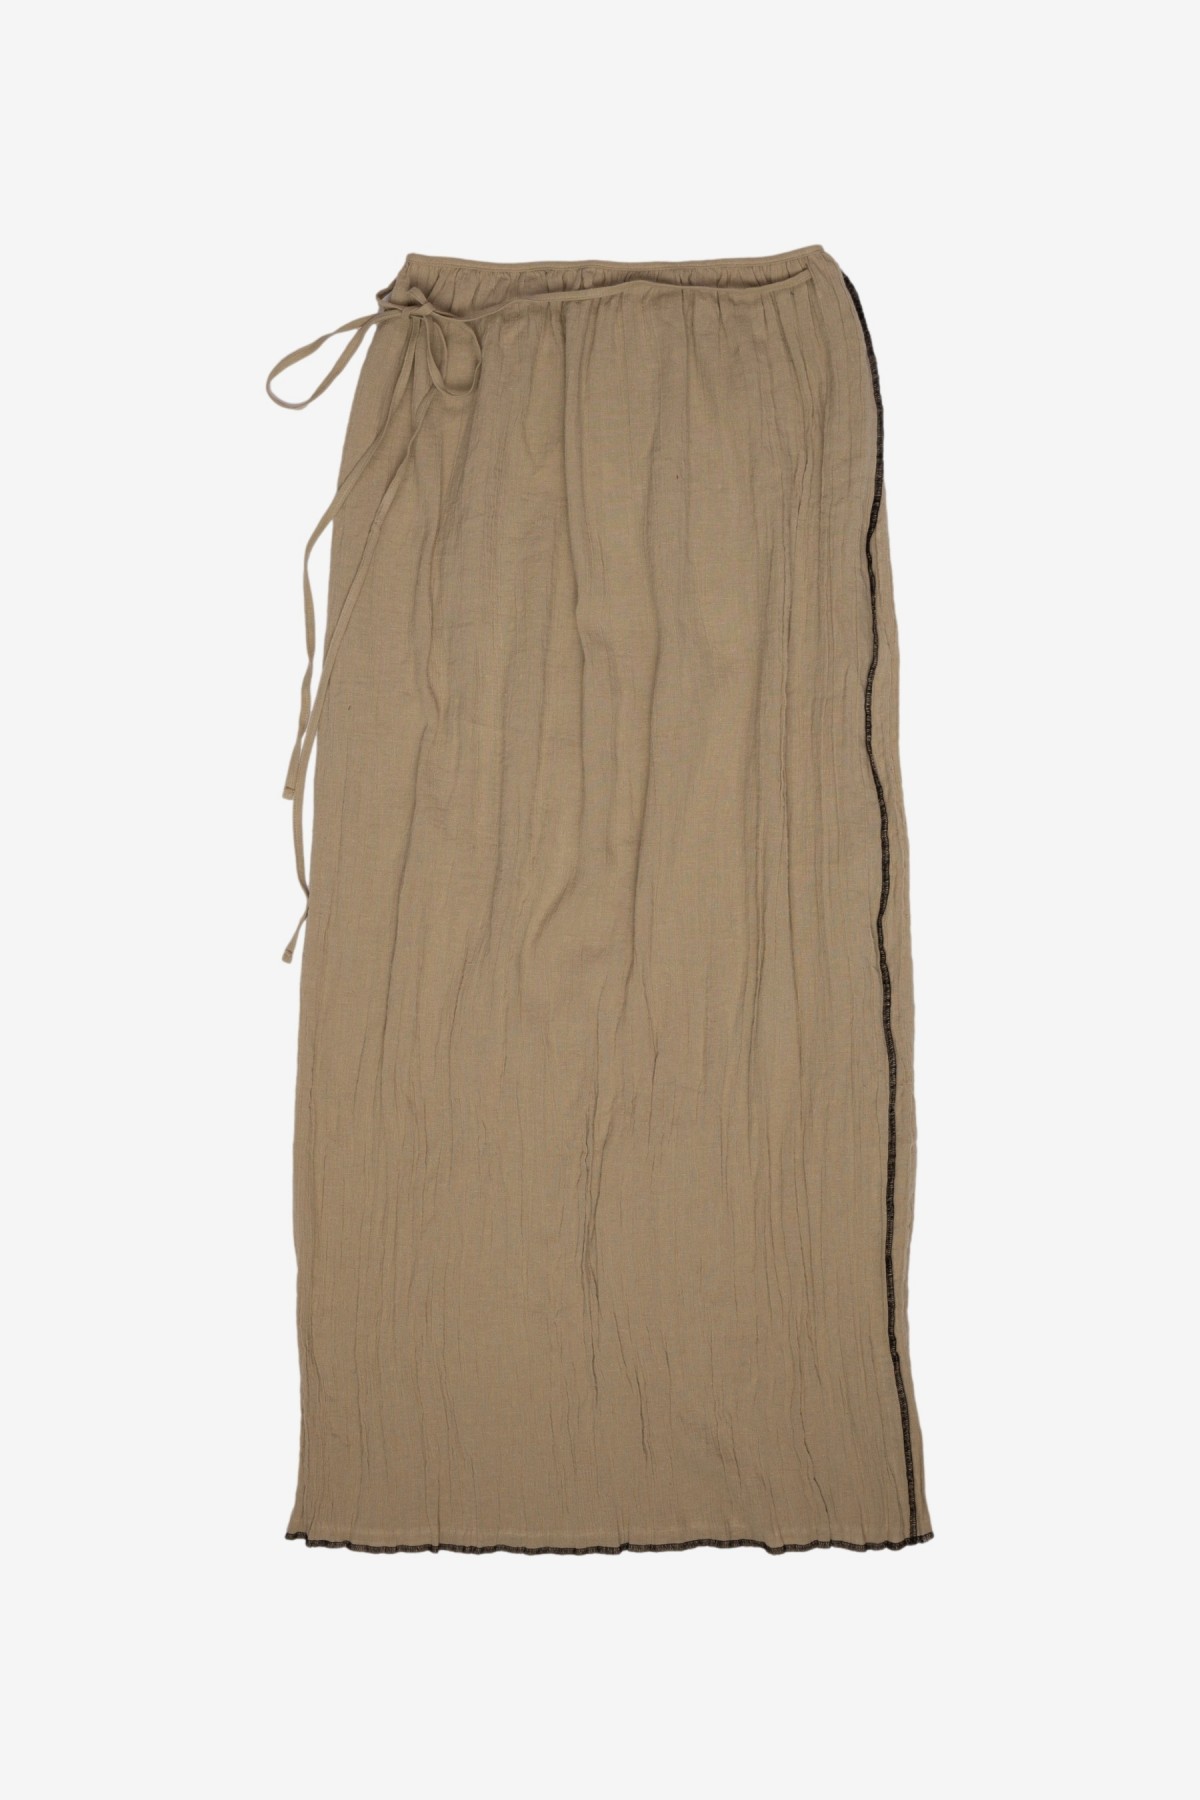 Baserange Shok Wrap Skirt in Acacia Brown